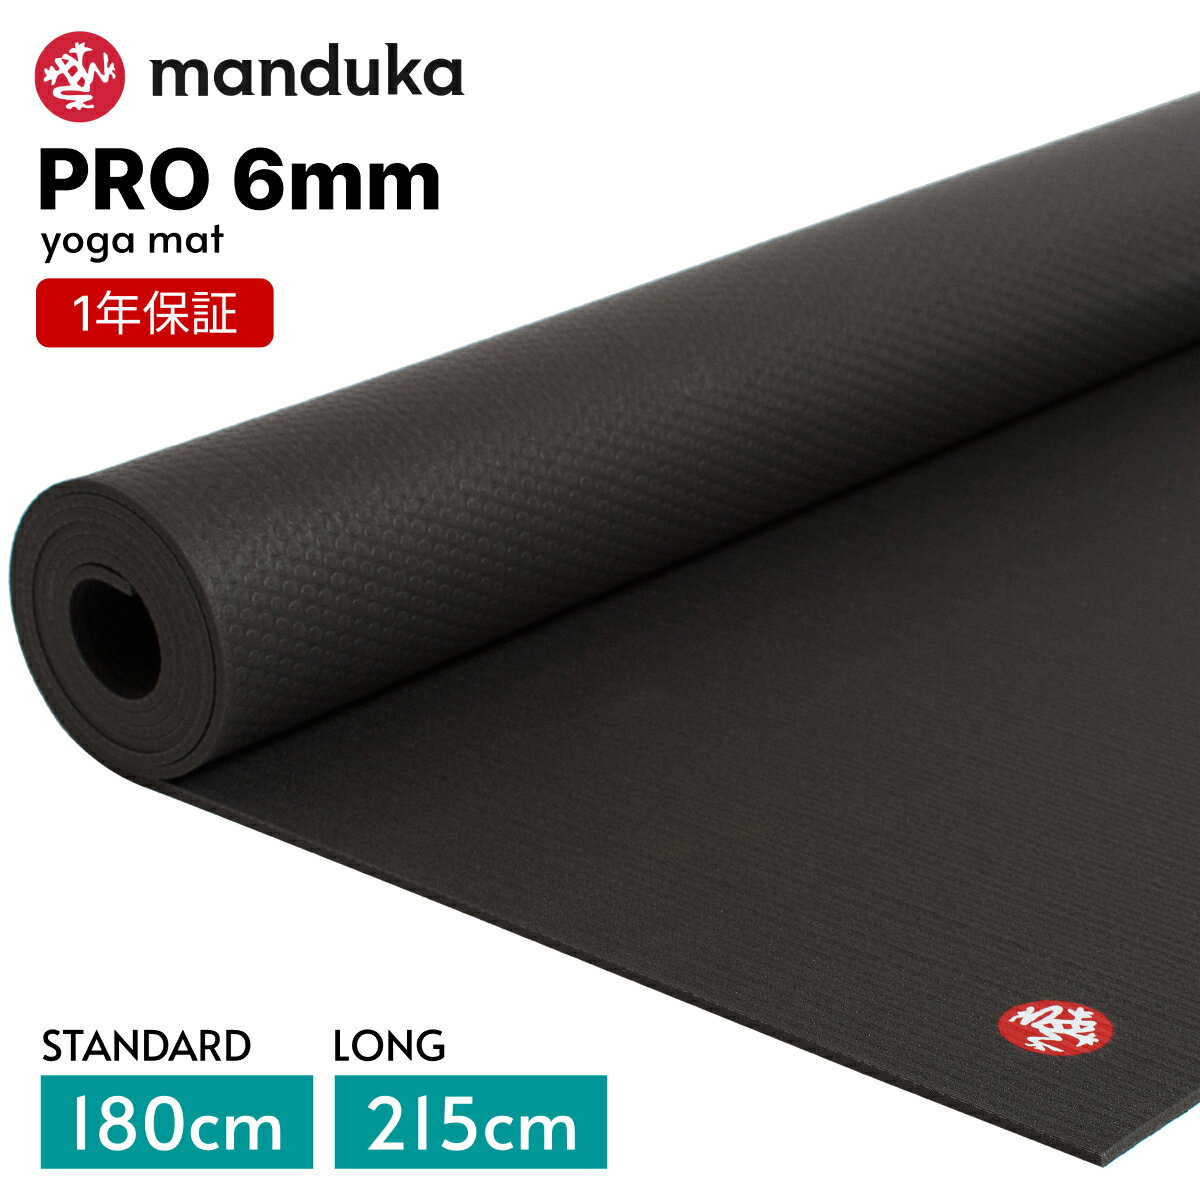  マンドゥカ Manduka ヨガマット プロ ブラックマット 6mm 《1年保証付》 日本正規品 | The Black Mat PRO yogamat 大きい 大判 防音 幅広「TR」001 RVPA